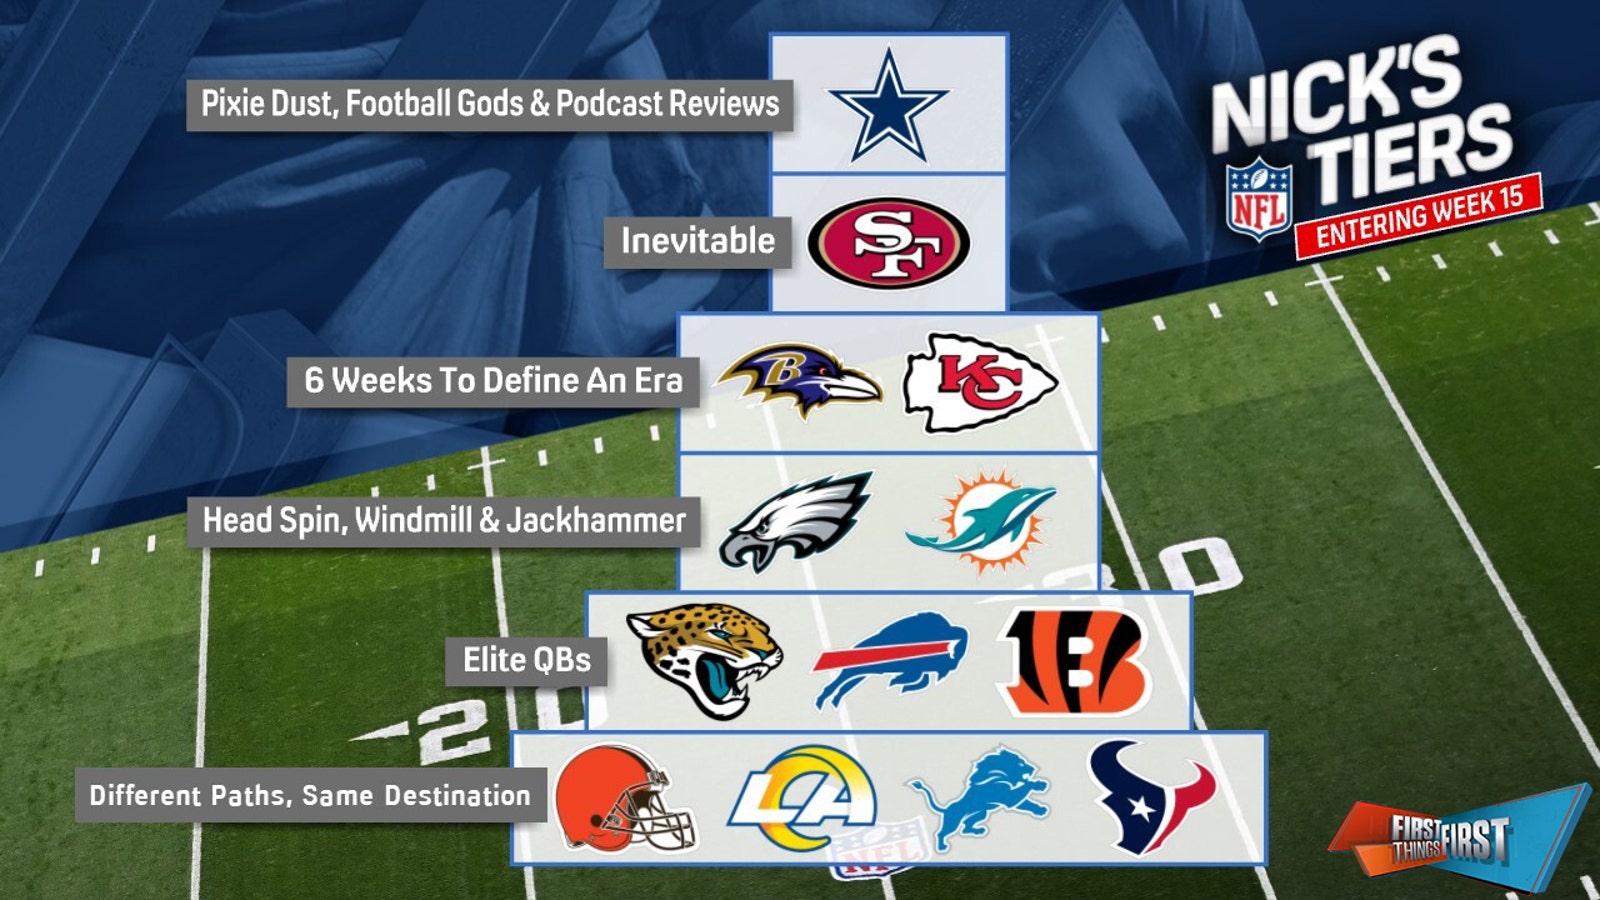 Cowboys top Nick's NFL Tiers entering Week 15 